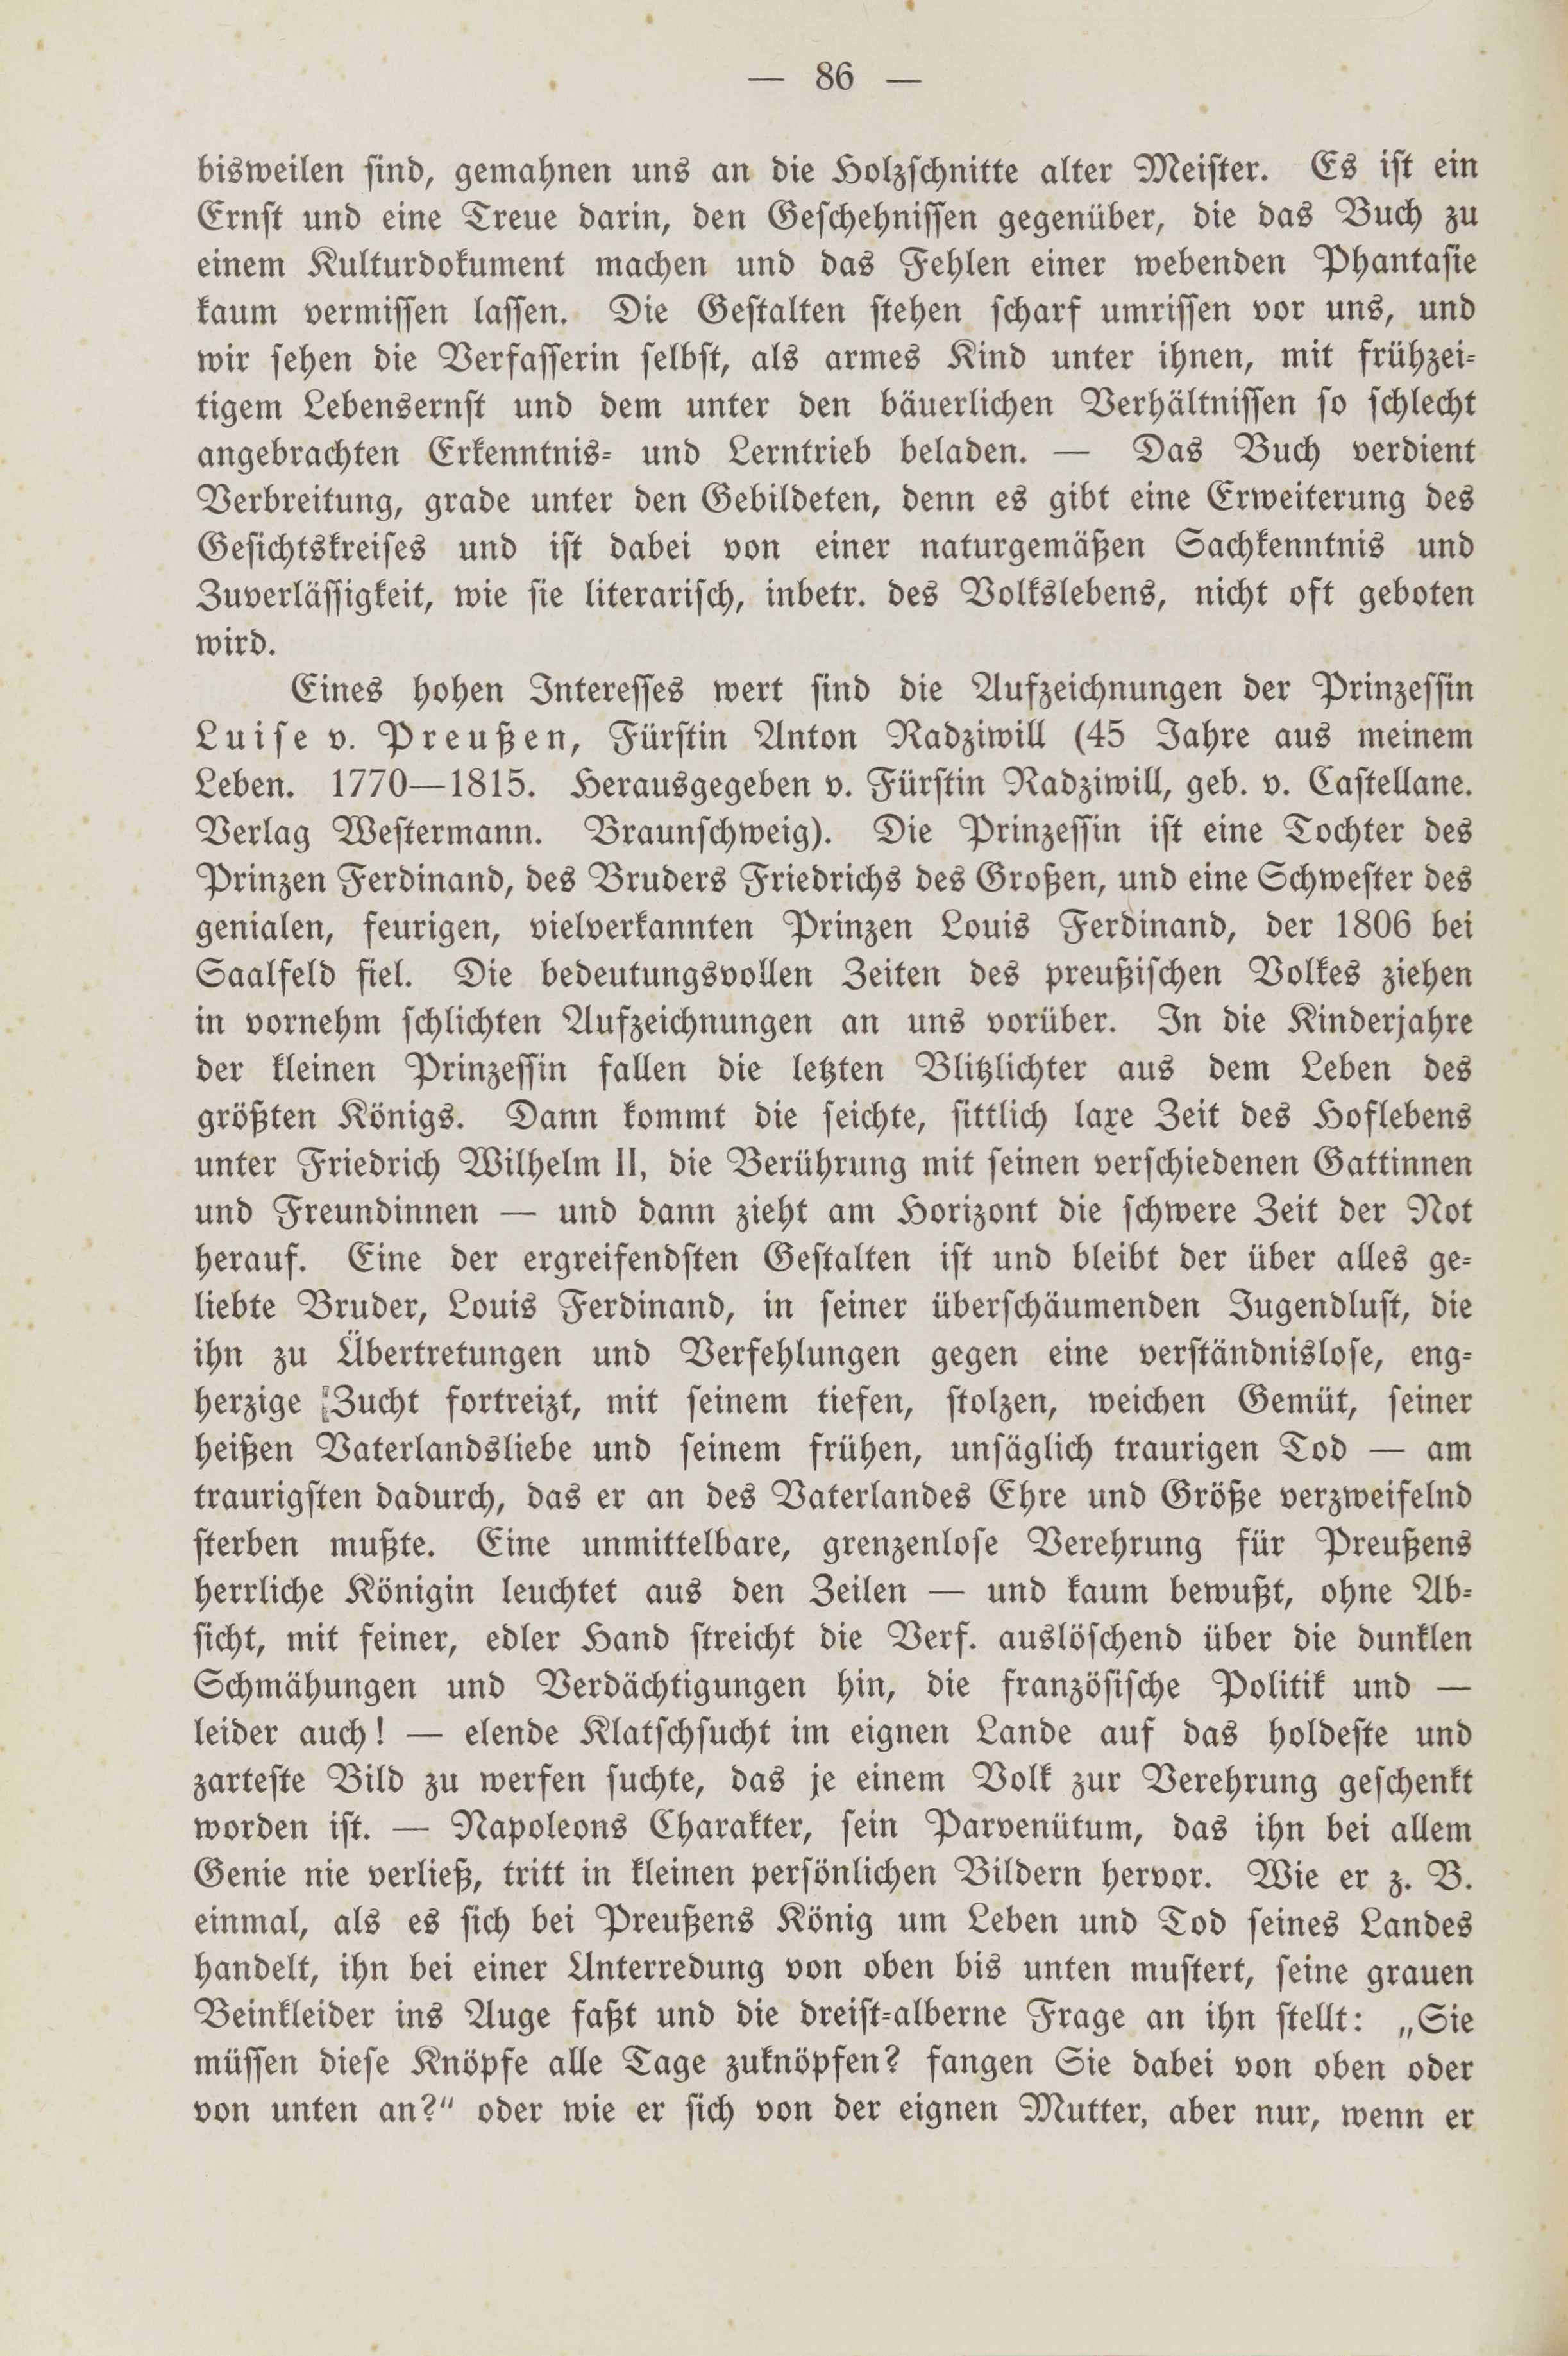 Deutsche Monatsschrift für Russland [2] (1913) | 90. (86) Main body of text